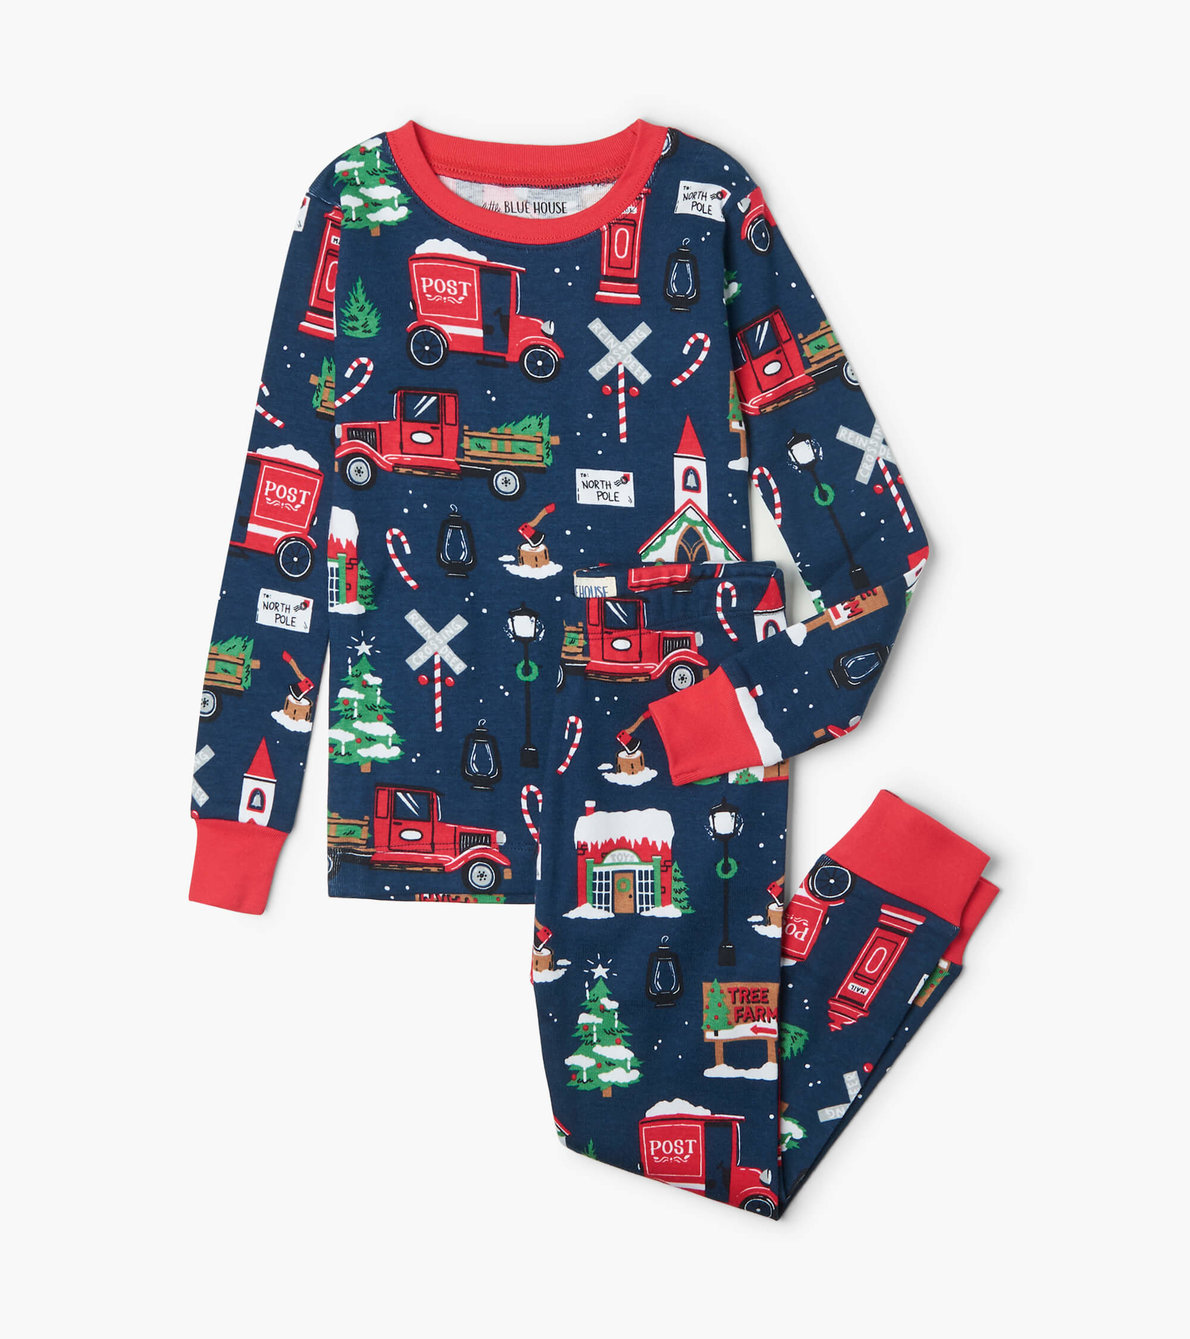 View larger image of Navy Christmas Village Kids Pajama Set